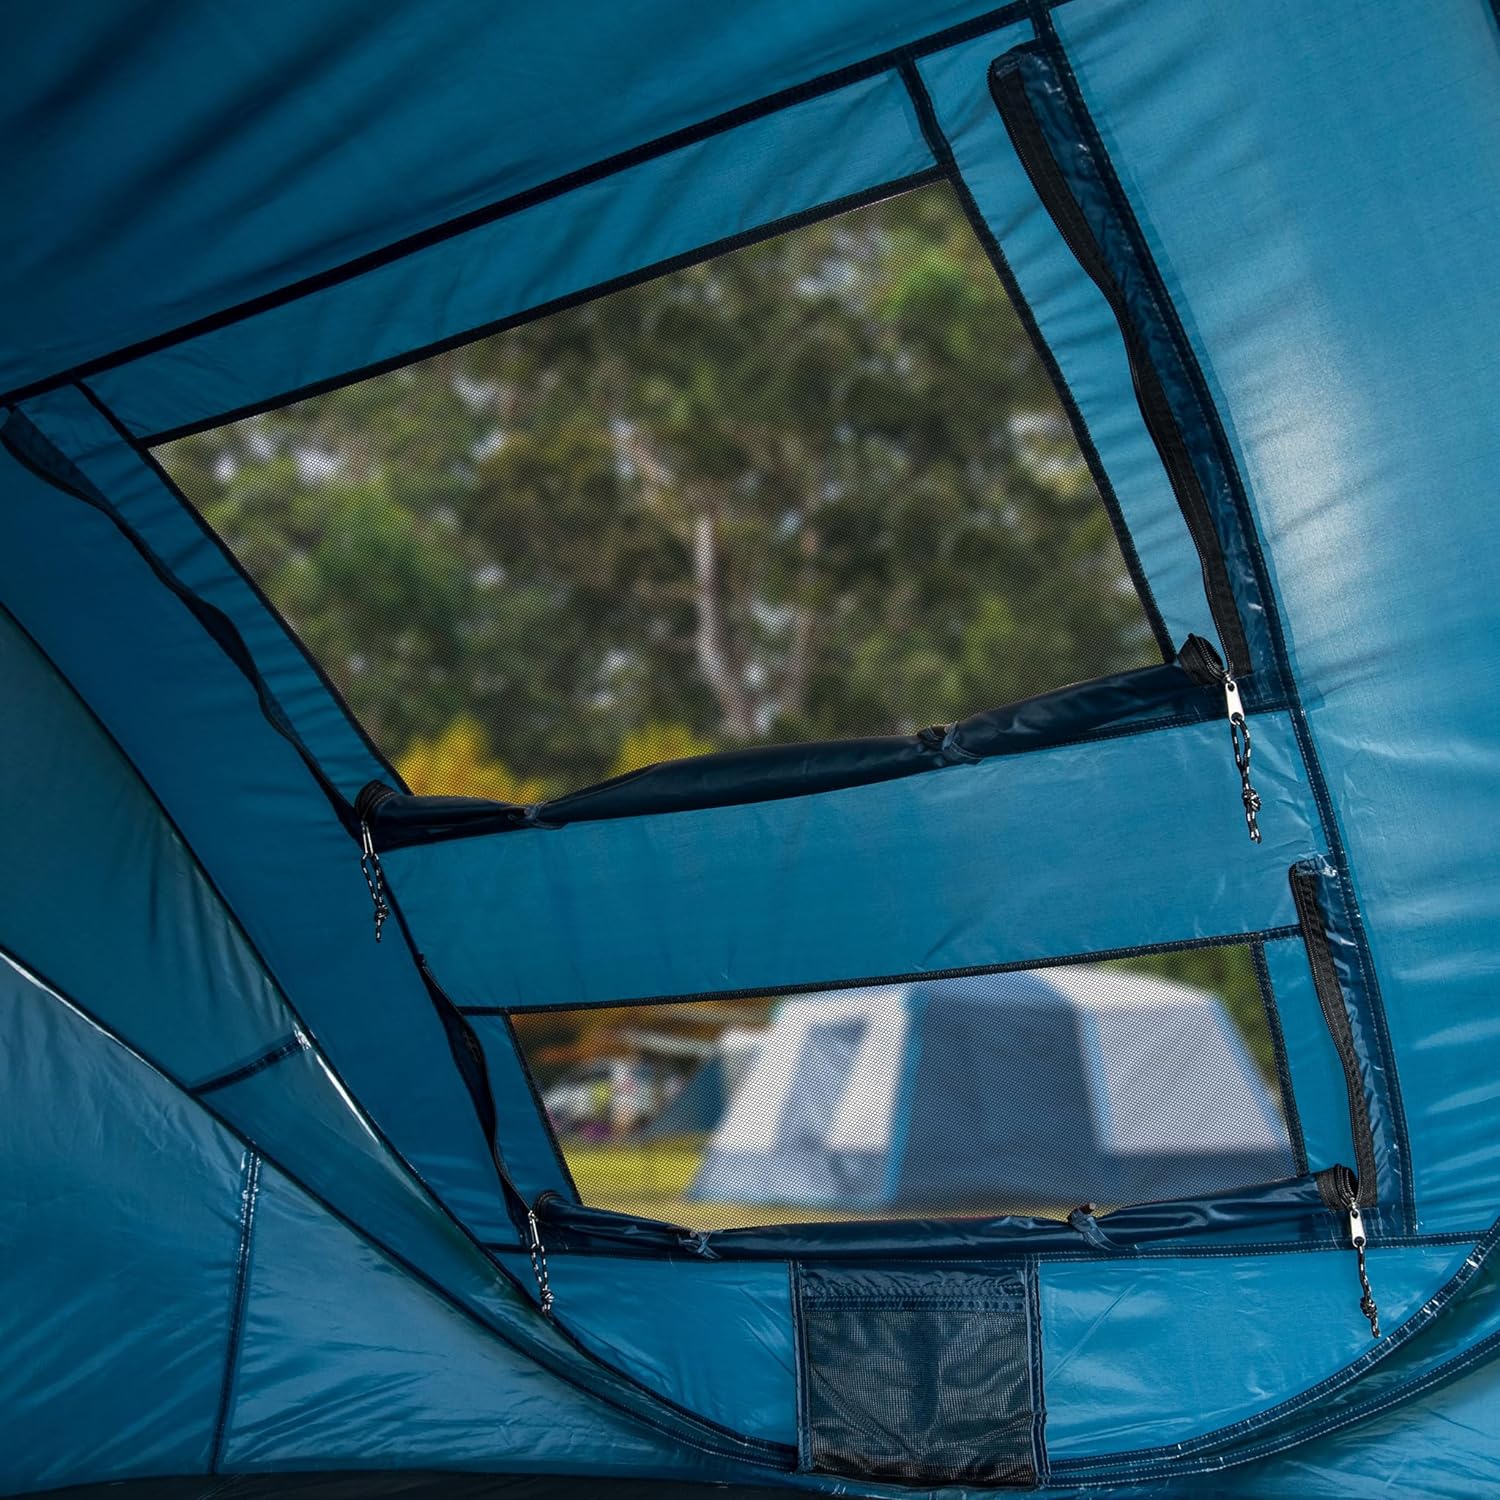 Tambu Acamp 3-4 Person Pop Up Tent